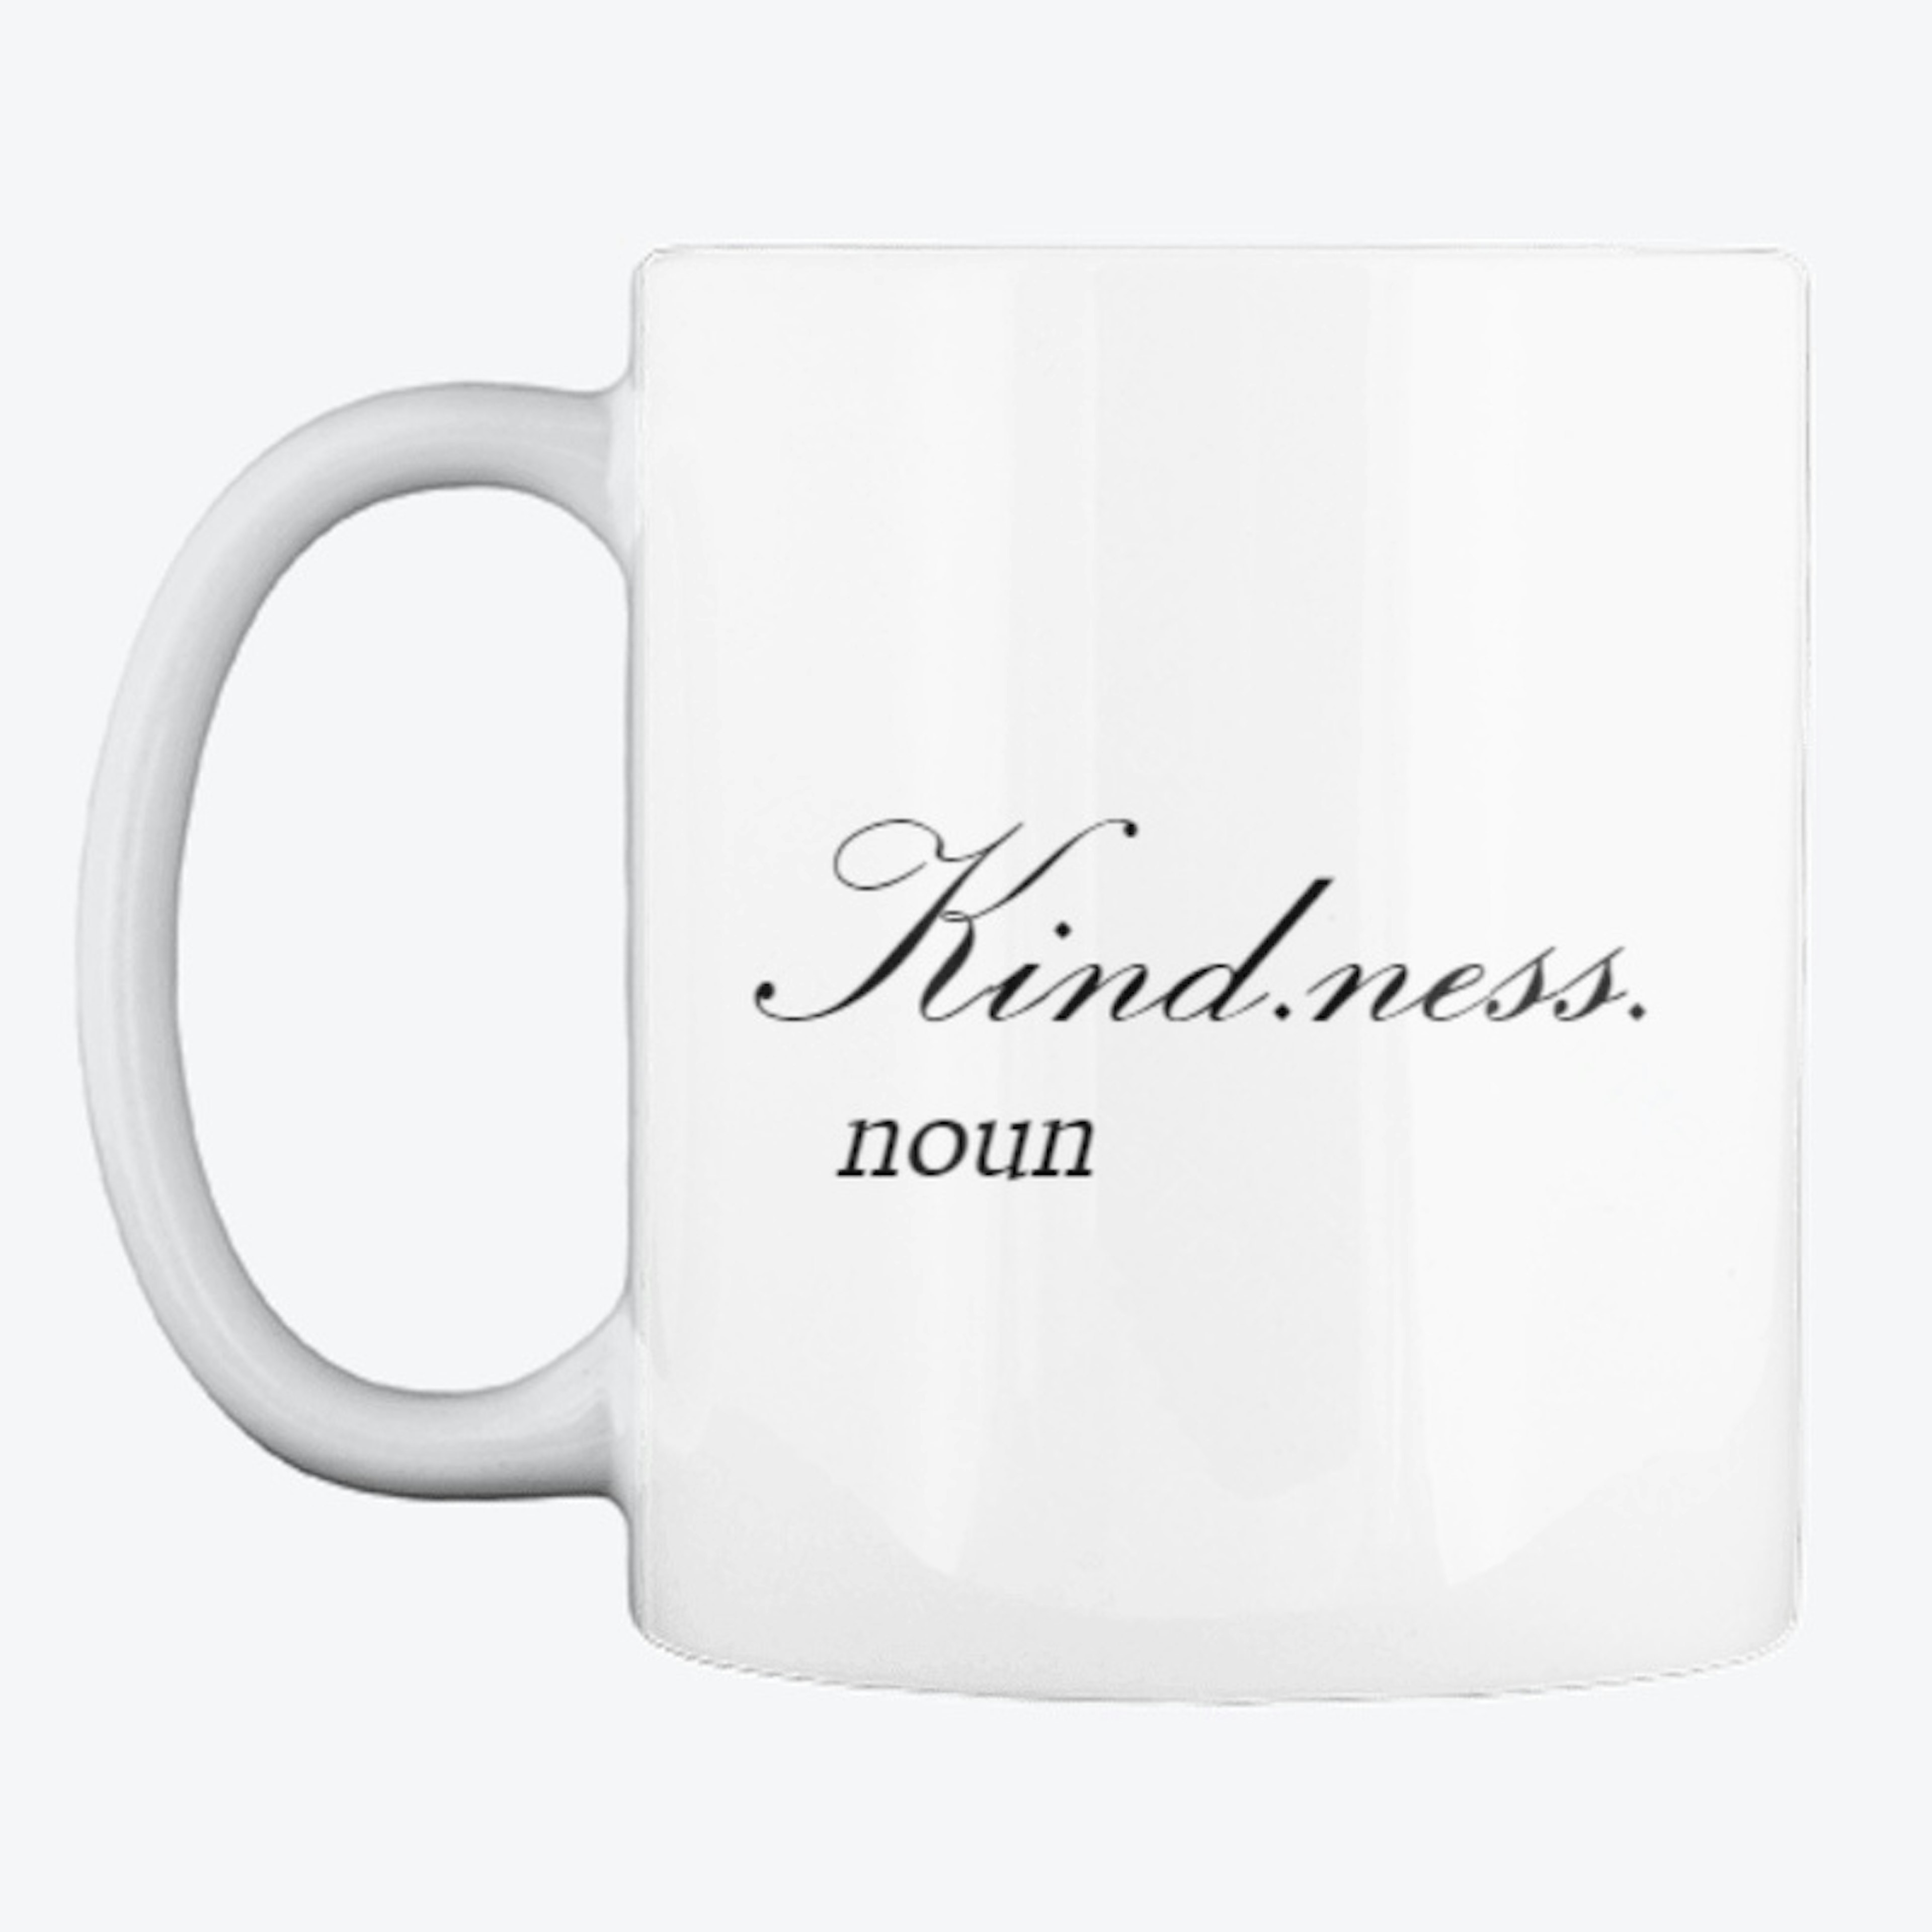 Kindness Mug